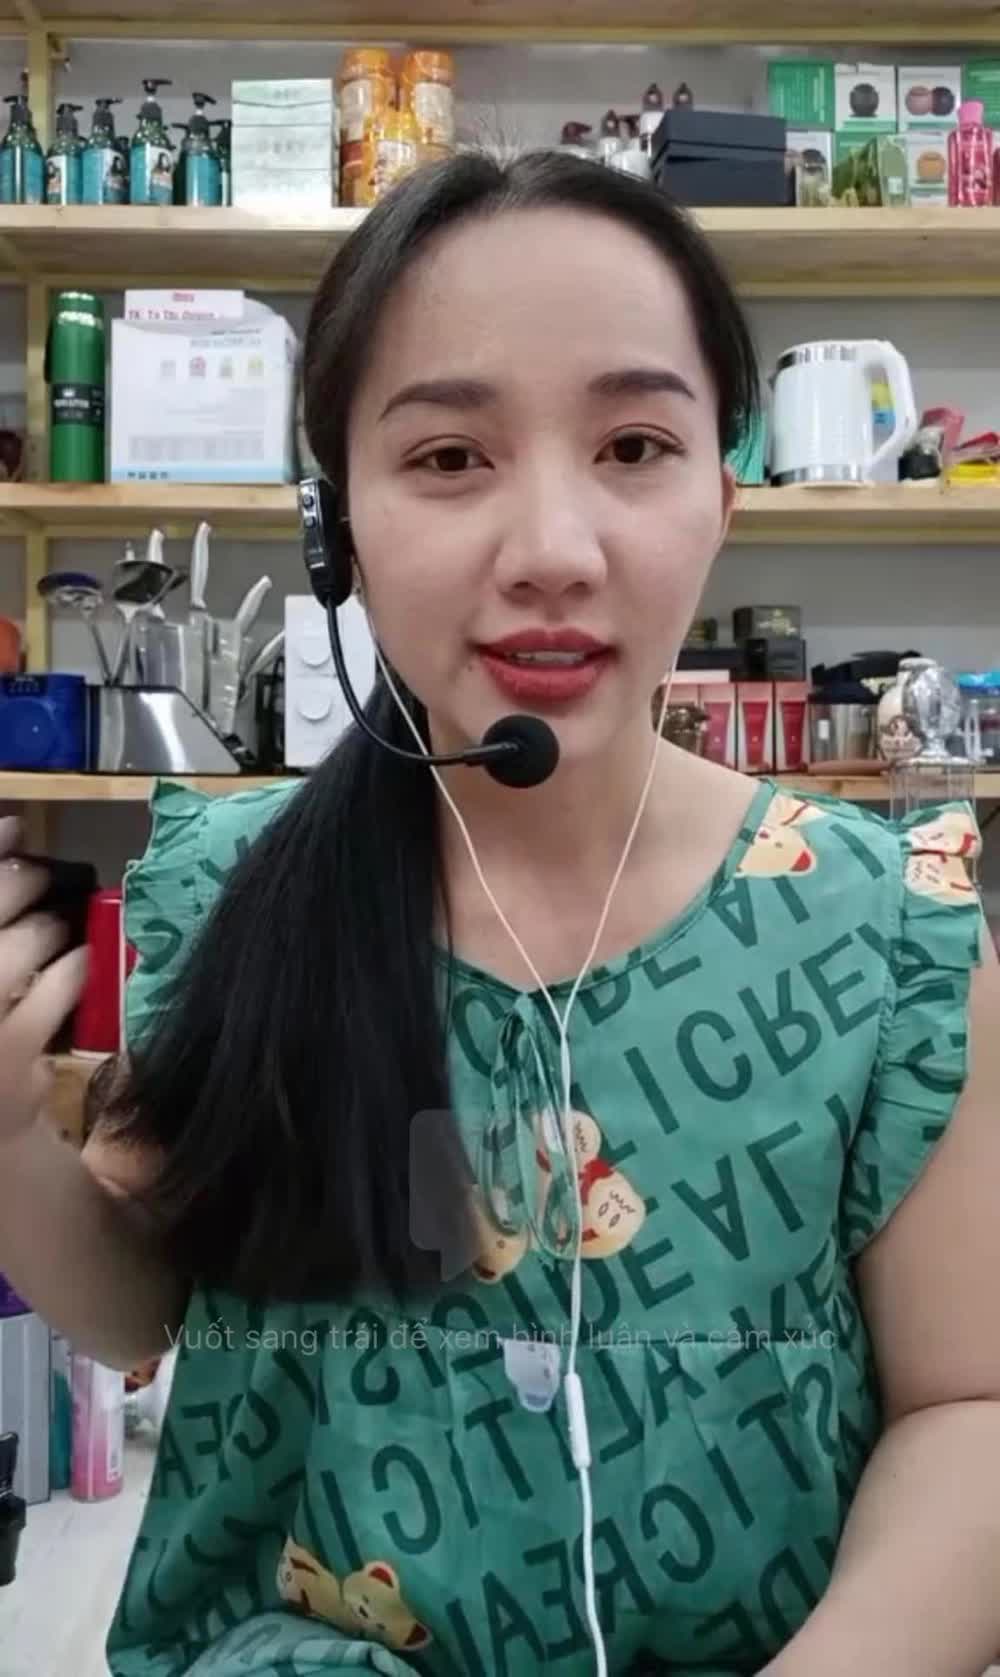 Vợ của sao Việt từng bị phạt hơn 51 triệu vì livestream bán đồ giả, lời khai về nguồn gốc hàng hoá gây chú ý   - Ảnh 2.